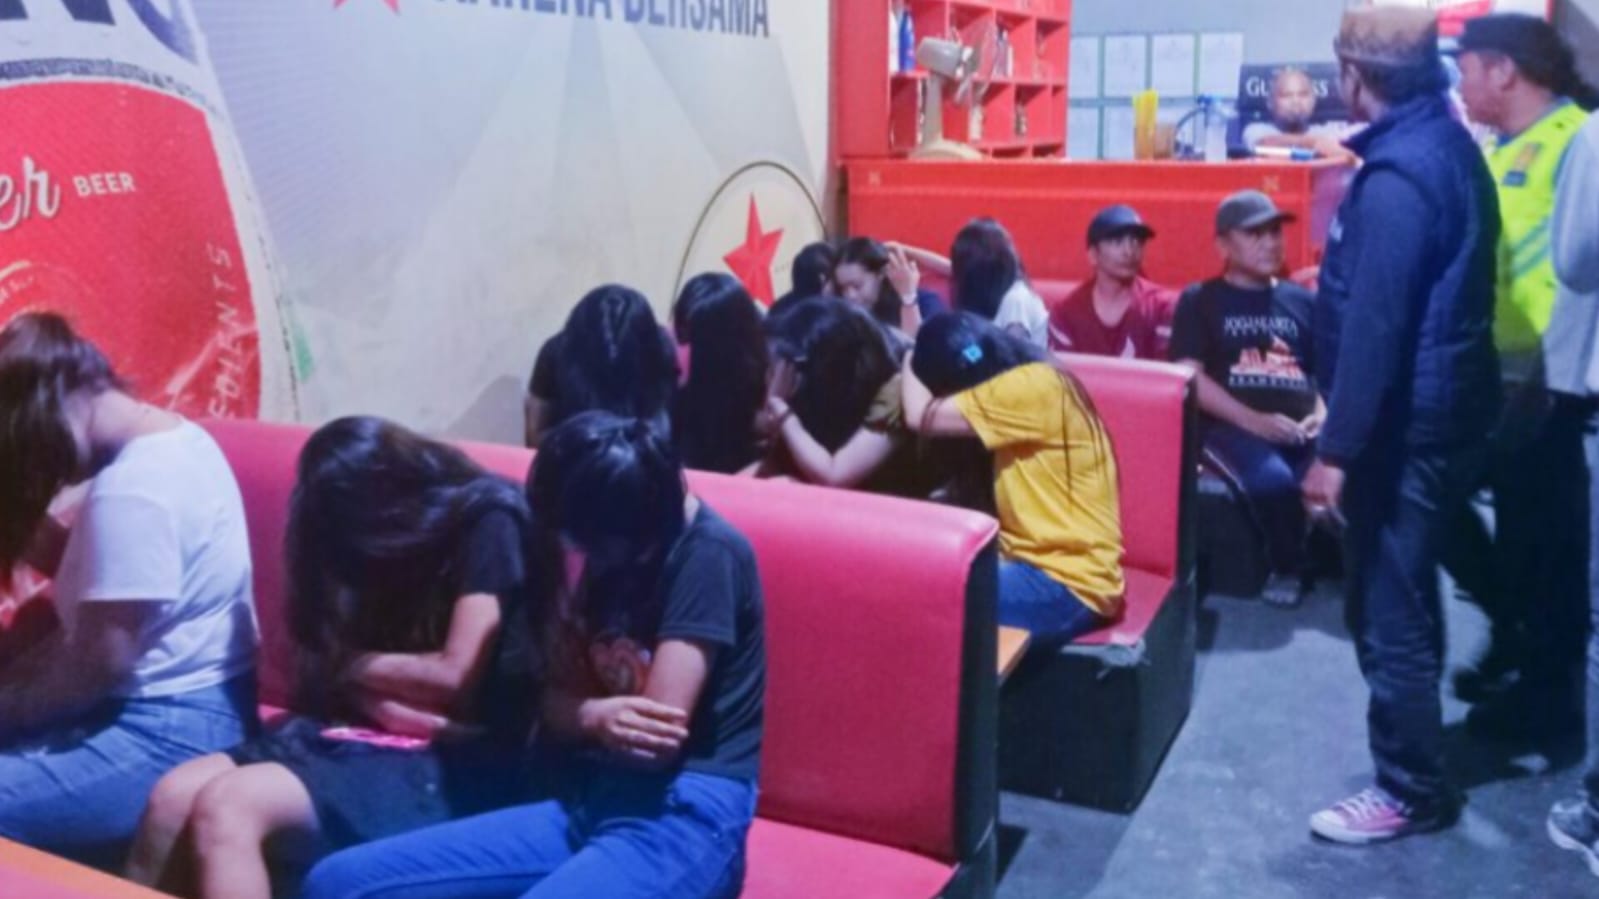 Bulan Ramadan, 12 Wanita Malam di Lubuk Linggau Terjaring Razia di Cafe, 2 Orang Bawah Umur